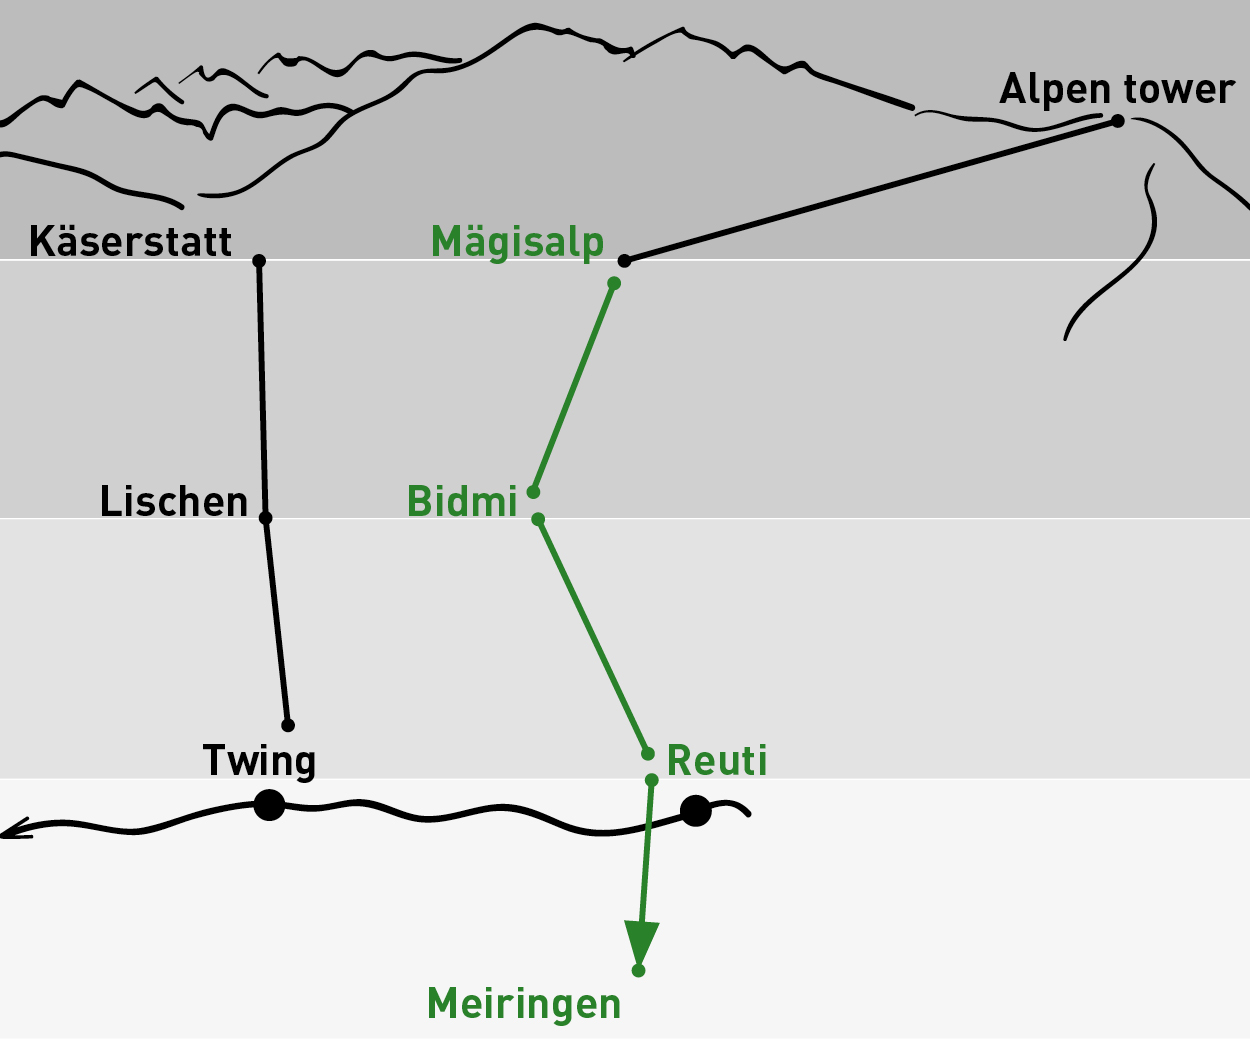 Mägisalp - Meiringen | One-way trip